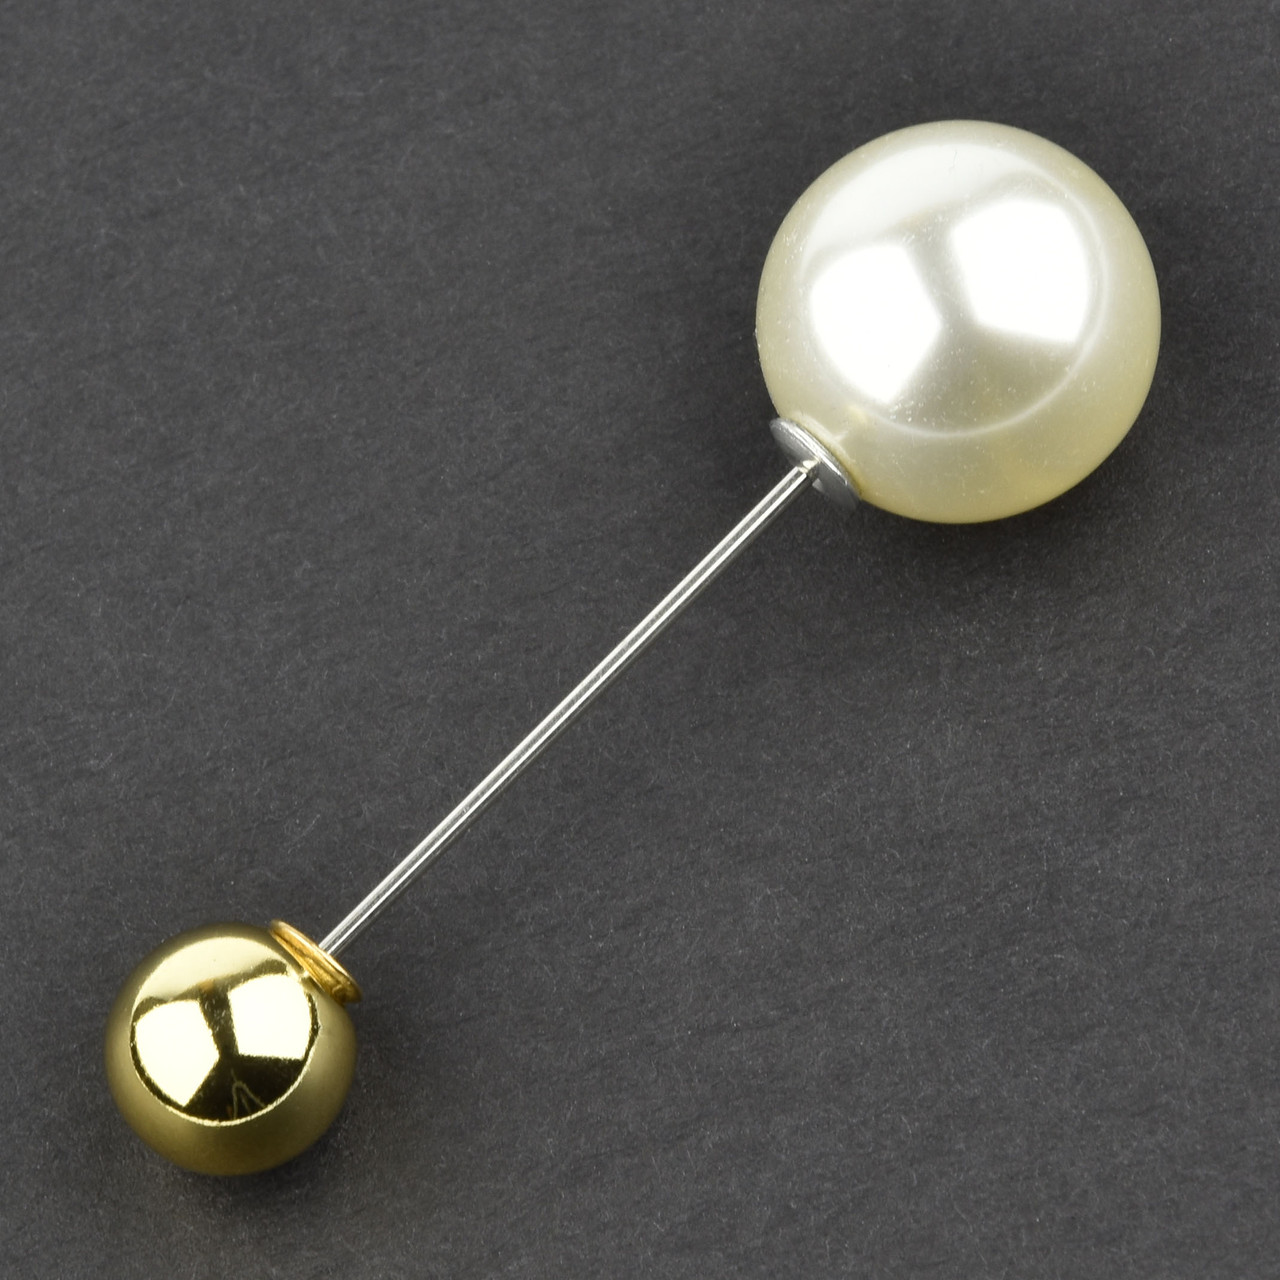 Брошь Игла серебристого цвета с жемчужиной и золотистой бусиной диаметр бусин 9 мм и 9 мм длина броши 3,5 см